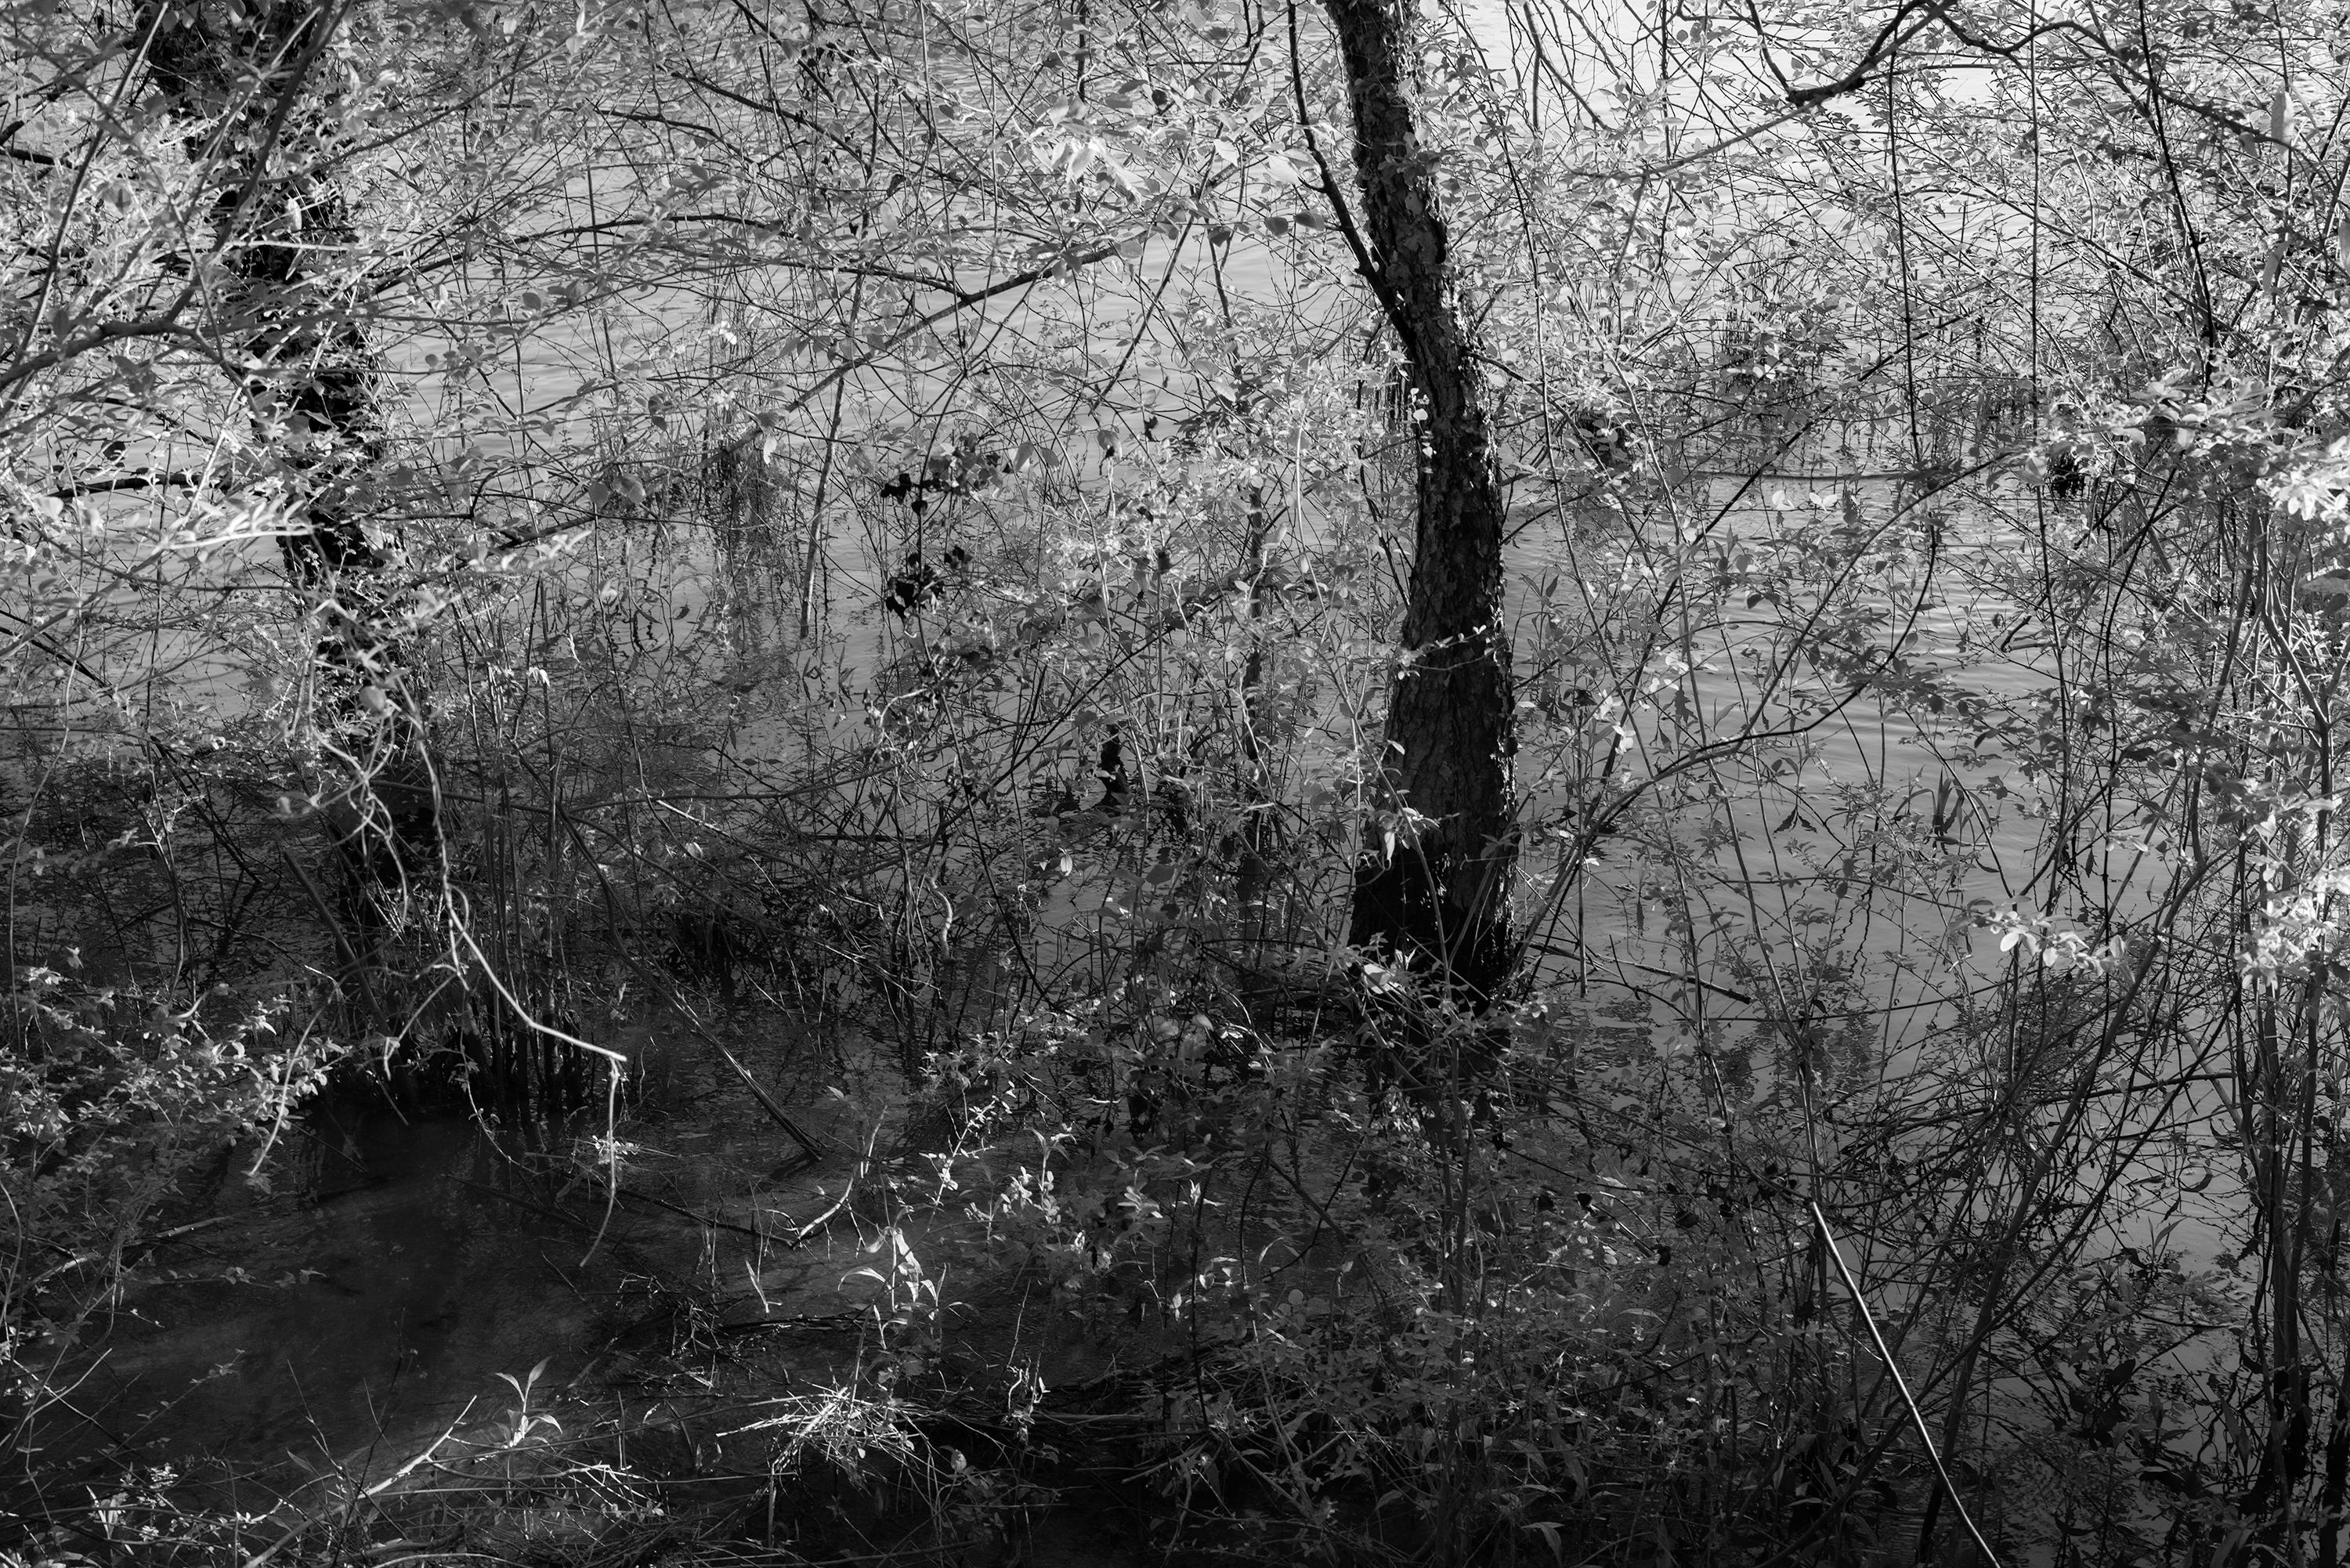 Richard Skoonberg Black and White Photograph - 'River Abstract' - Black and White - Landscape Photography - Eliot Porter